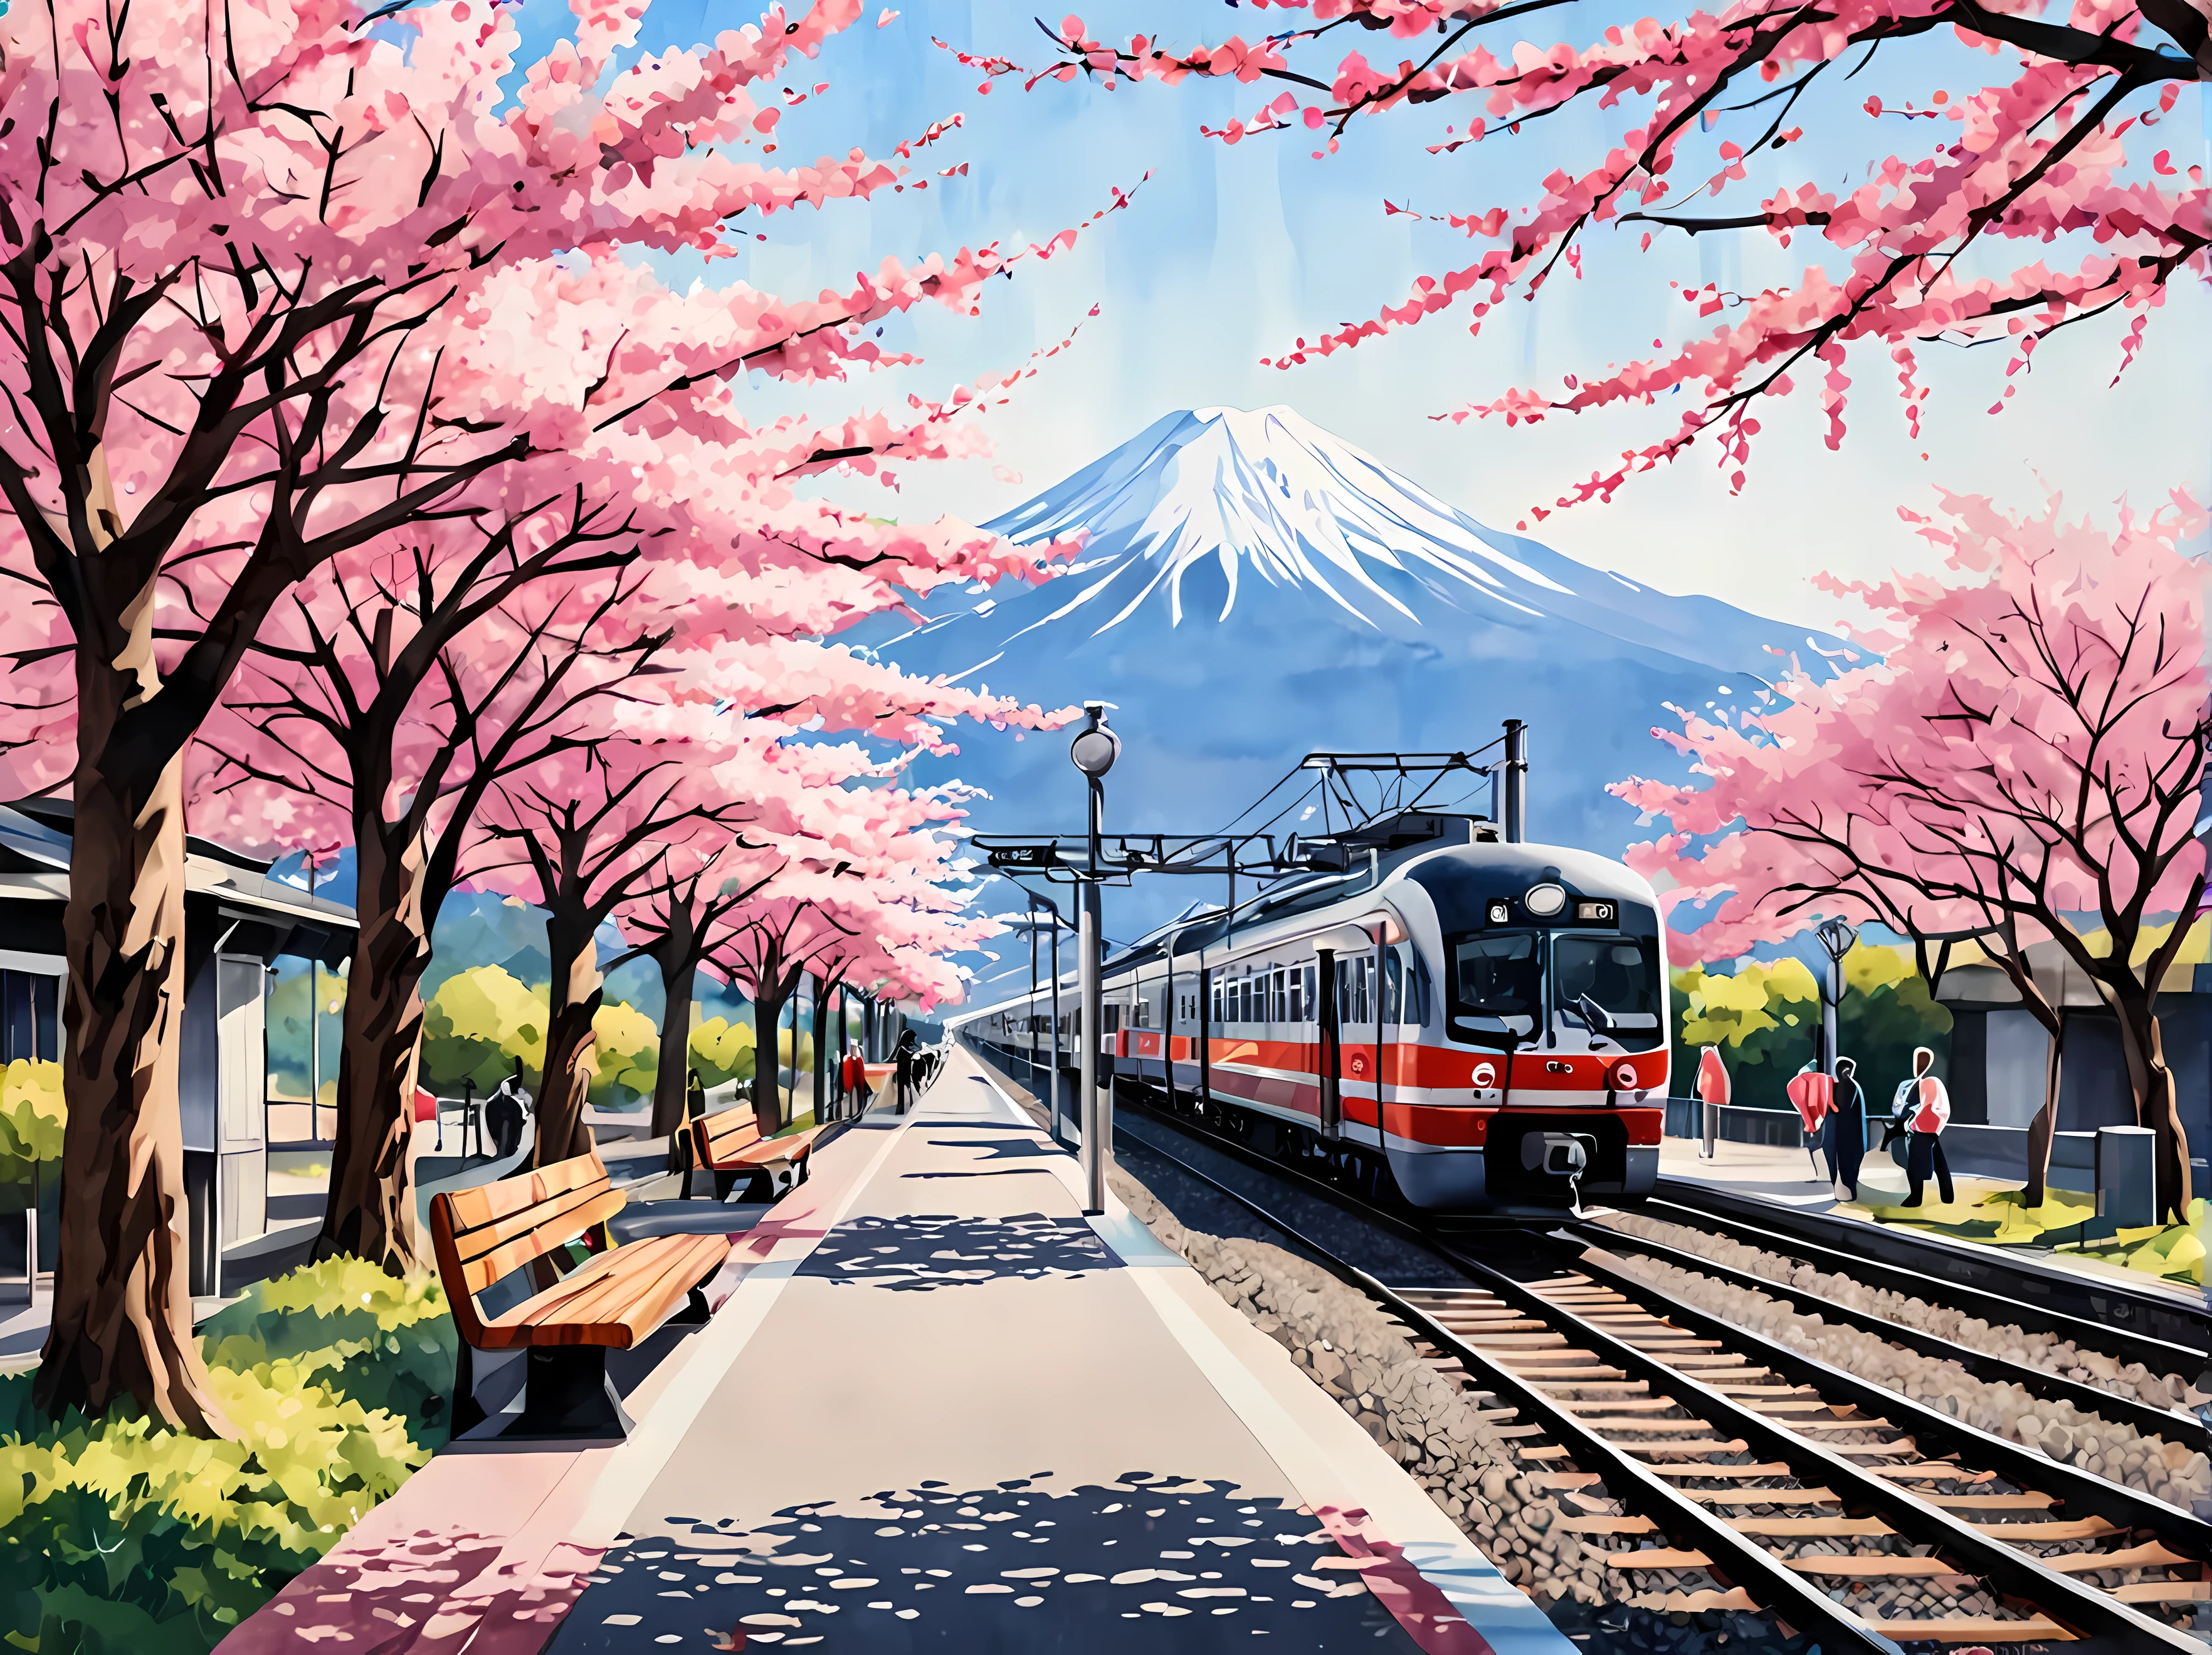 화창한 봄날 일본 기차역을 그린 매혹적인 수채화, 플랫폼에 있는 매끄러운 미래형 열차, 만개한 벚꽃나무에 둘러싸여, 랜턴과 나무 벤치와 같은 전통적인 요소, 후지산을 배경으로, 전통 의상을 입은 승객, 최대 16K 해상도의 걸작, 뛰어난 품질. | ((더_세부 사항))